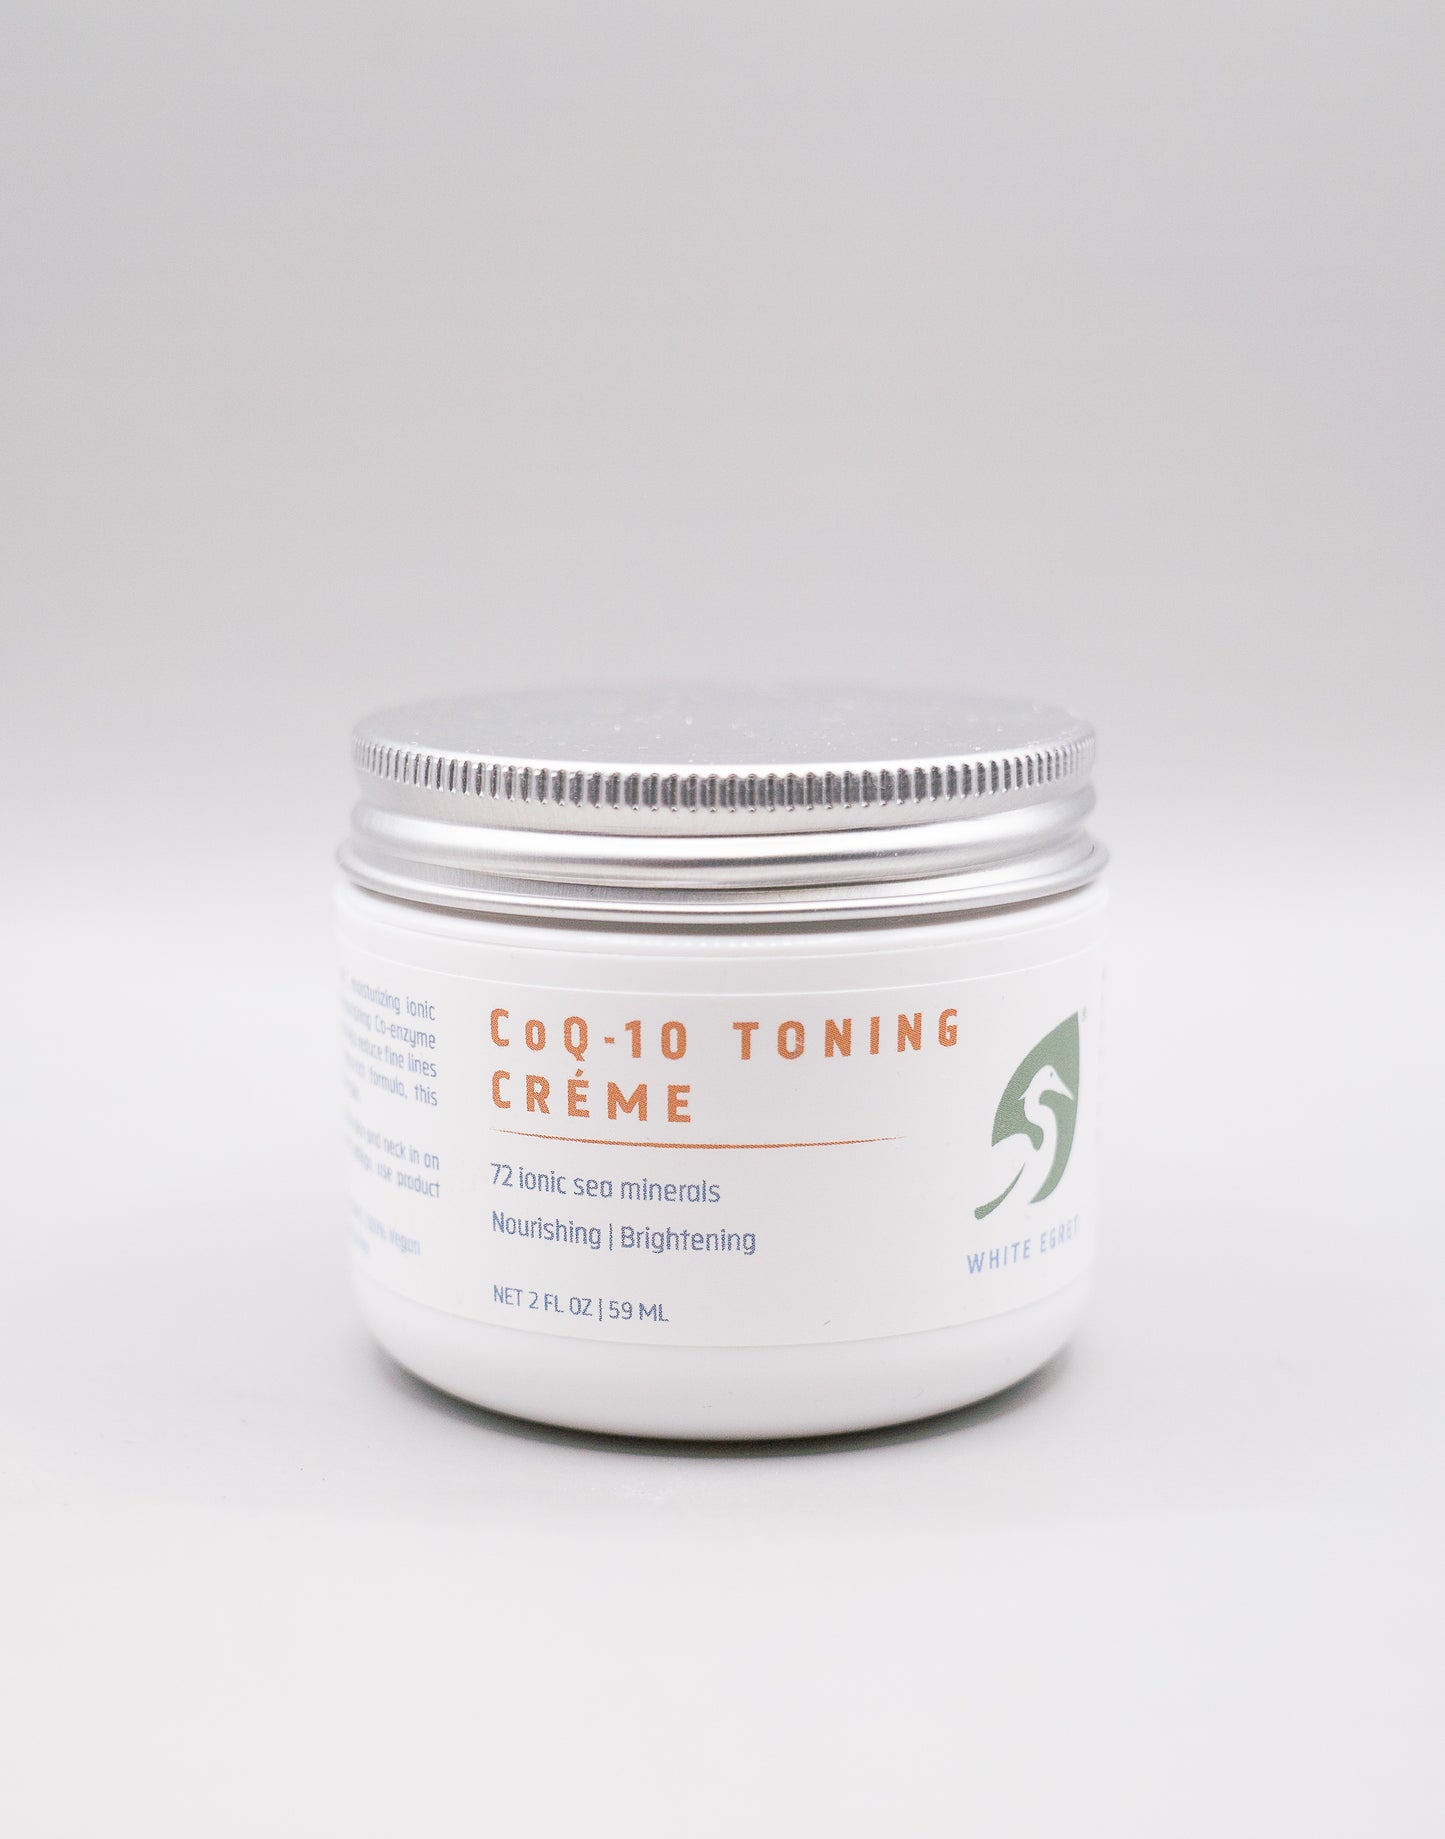 CoQ-10 Toning Crème - 50% off